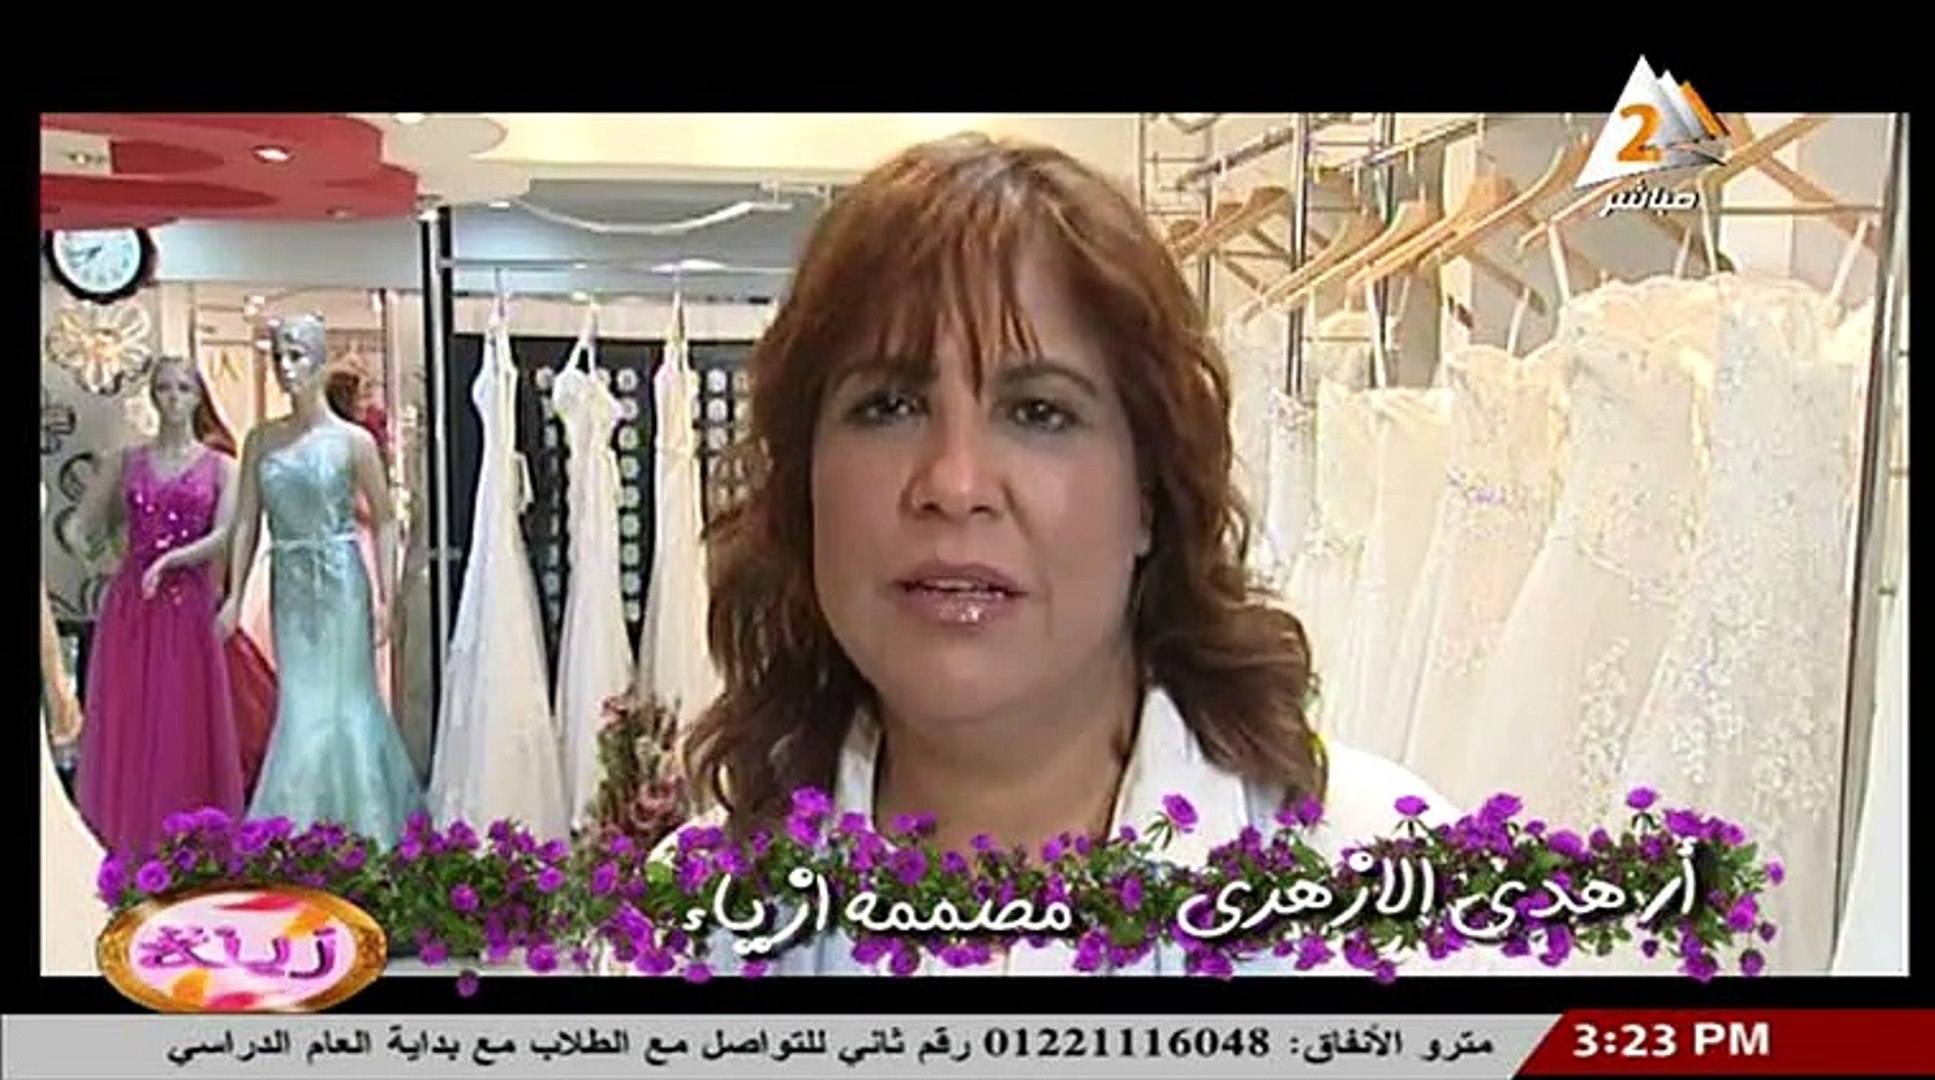 اتيليه هدي بالمعادي لفساتين الزفاف والسواريه - تليفون 01120000297 - فيديو  Dailymotion